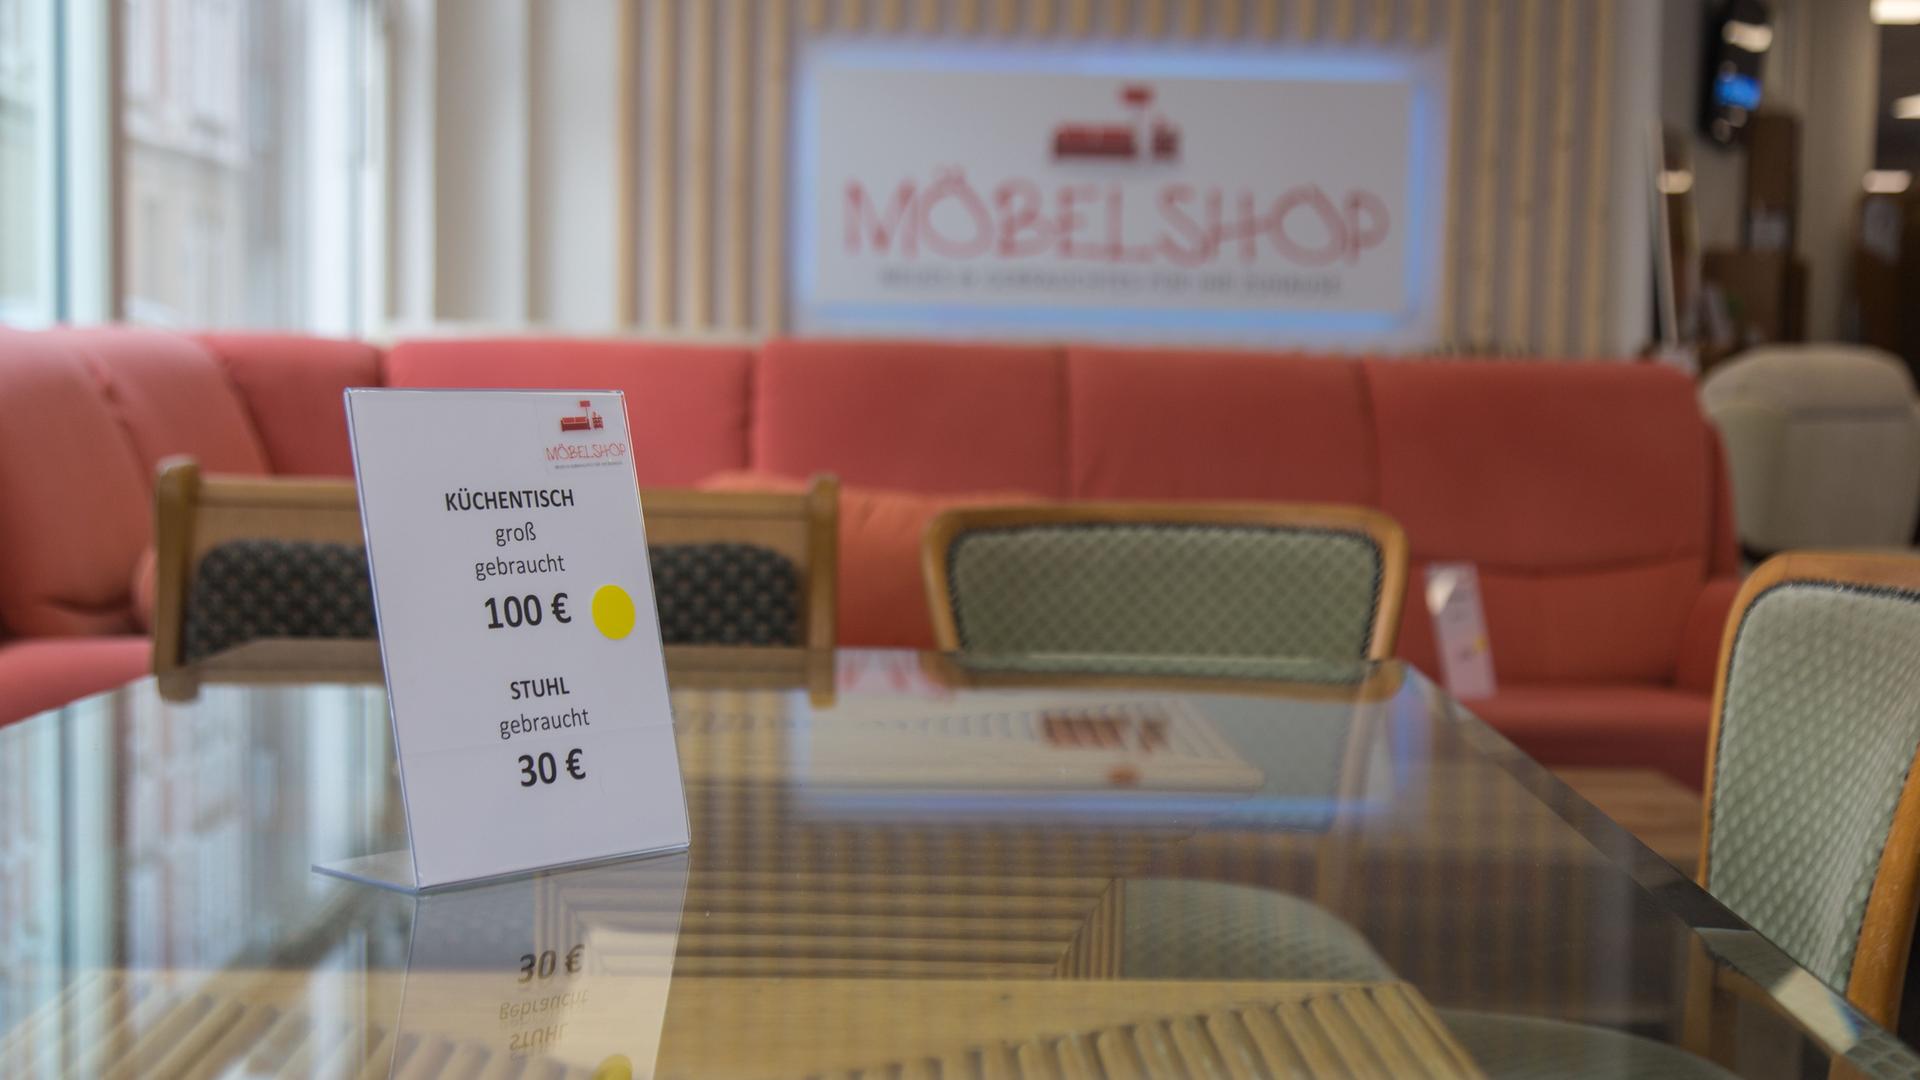 Ein Preisschild auf einem Tisch mit Glasplatte. Auf dem Schild steht: Küchentisch groß, gebraucht, 100 Euro, Stuhl, gebraucht, 30 Euro. Im Hintergrund ist unscharf die Aufschrift "Möbelshop" zu erkennen.